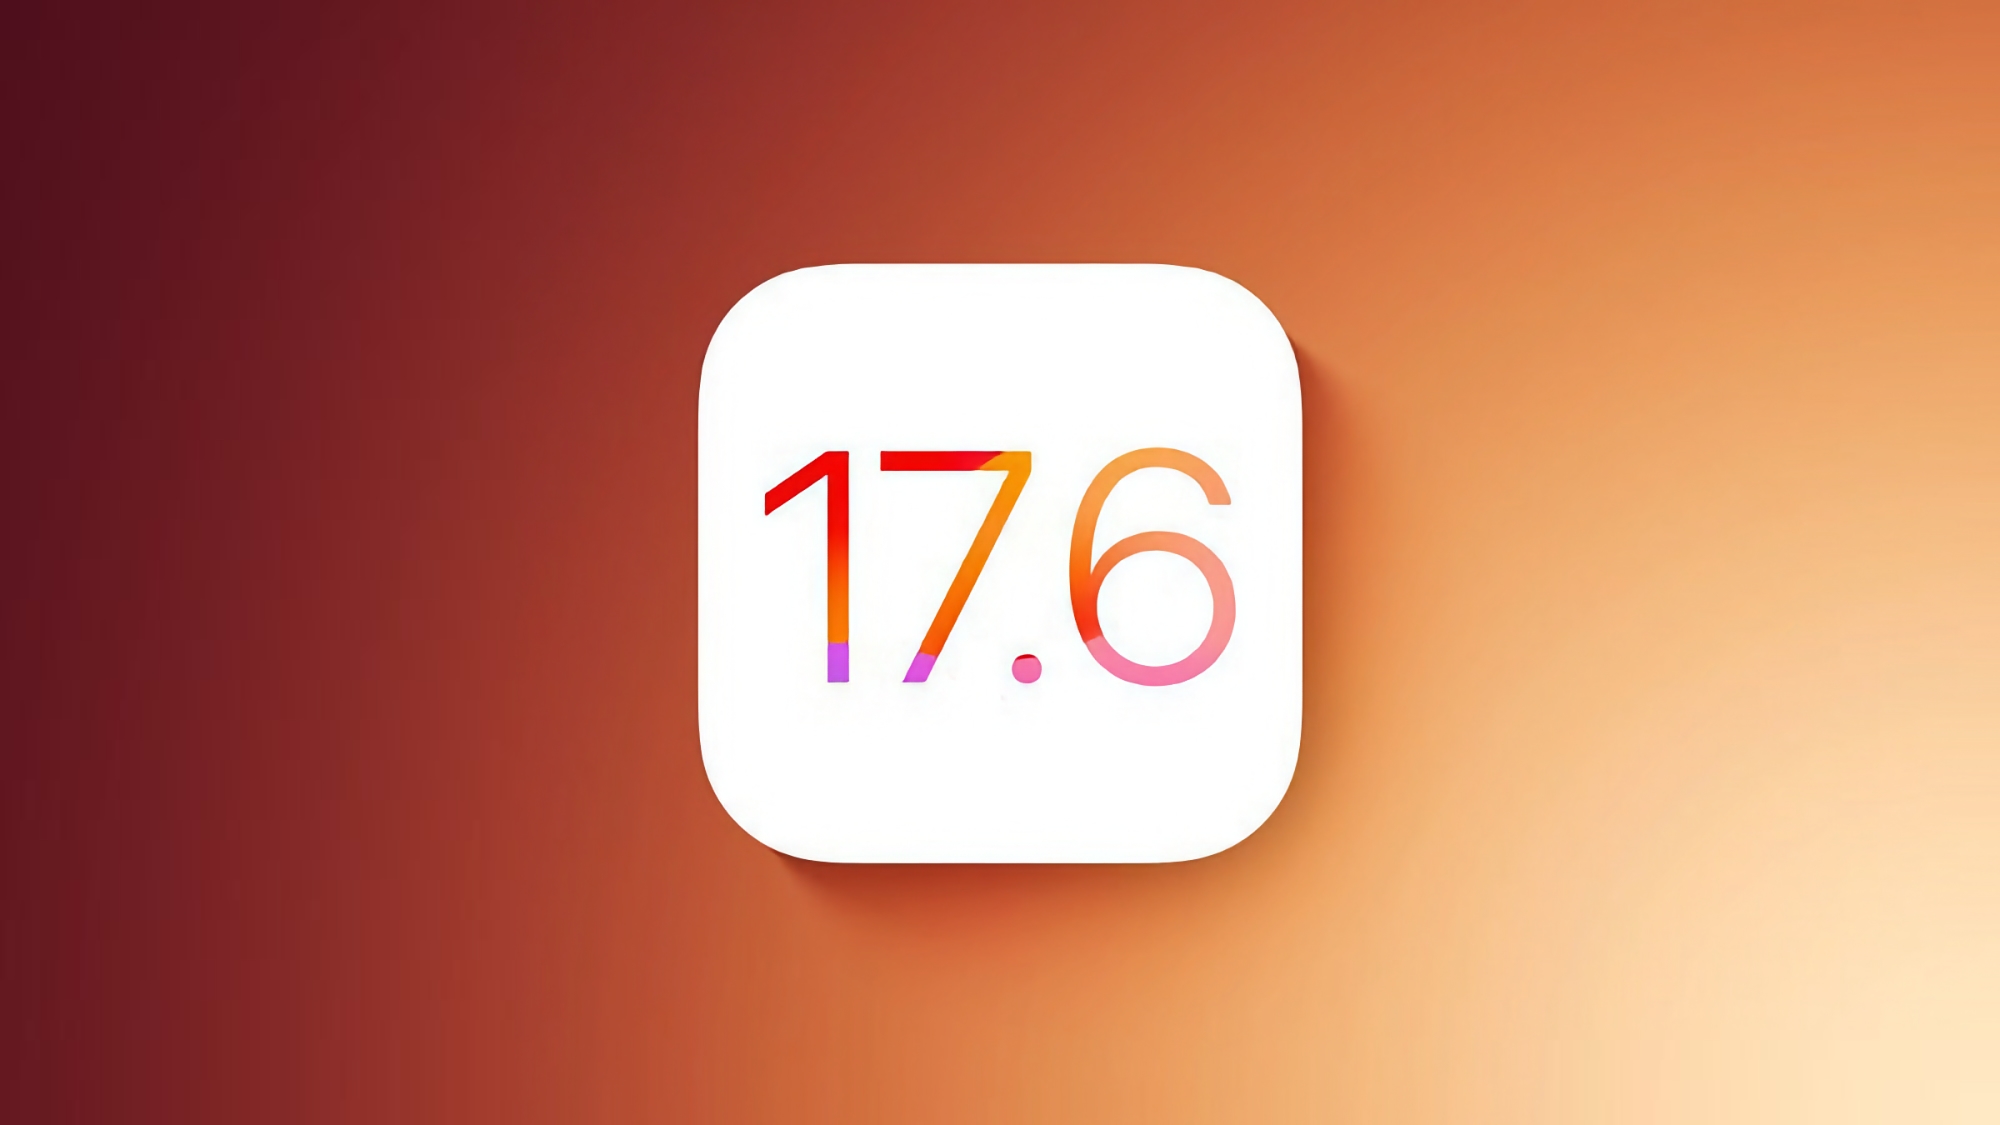 Apple випустила стабільну версію iOS 17.6 з виправленими помилками та поліпшеною безпекою